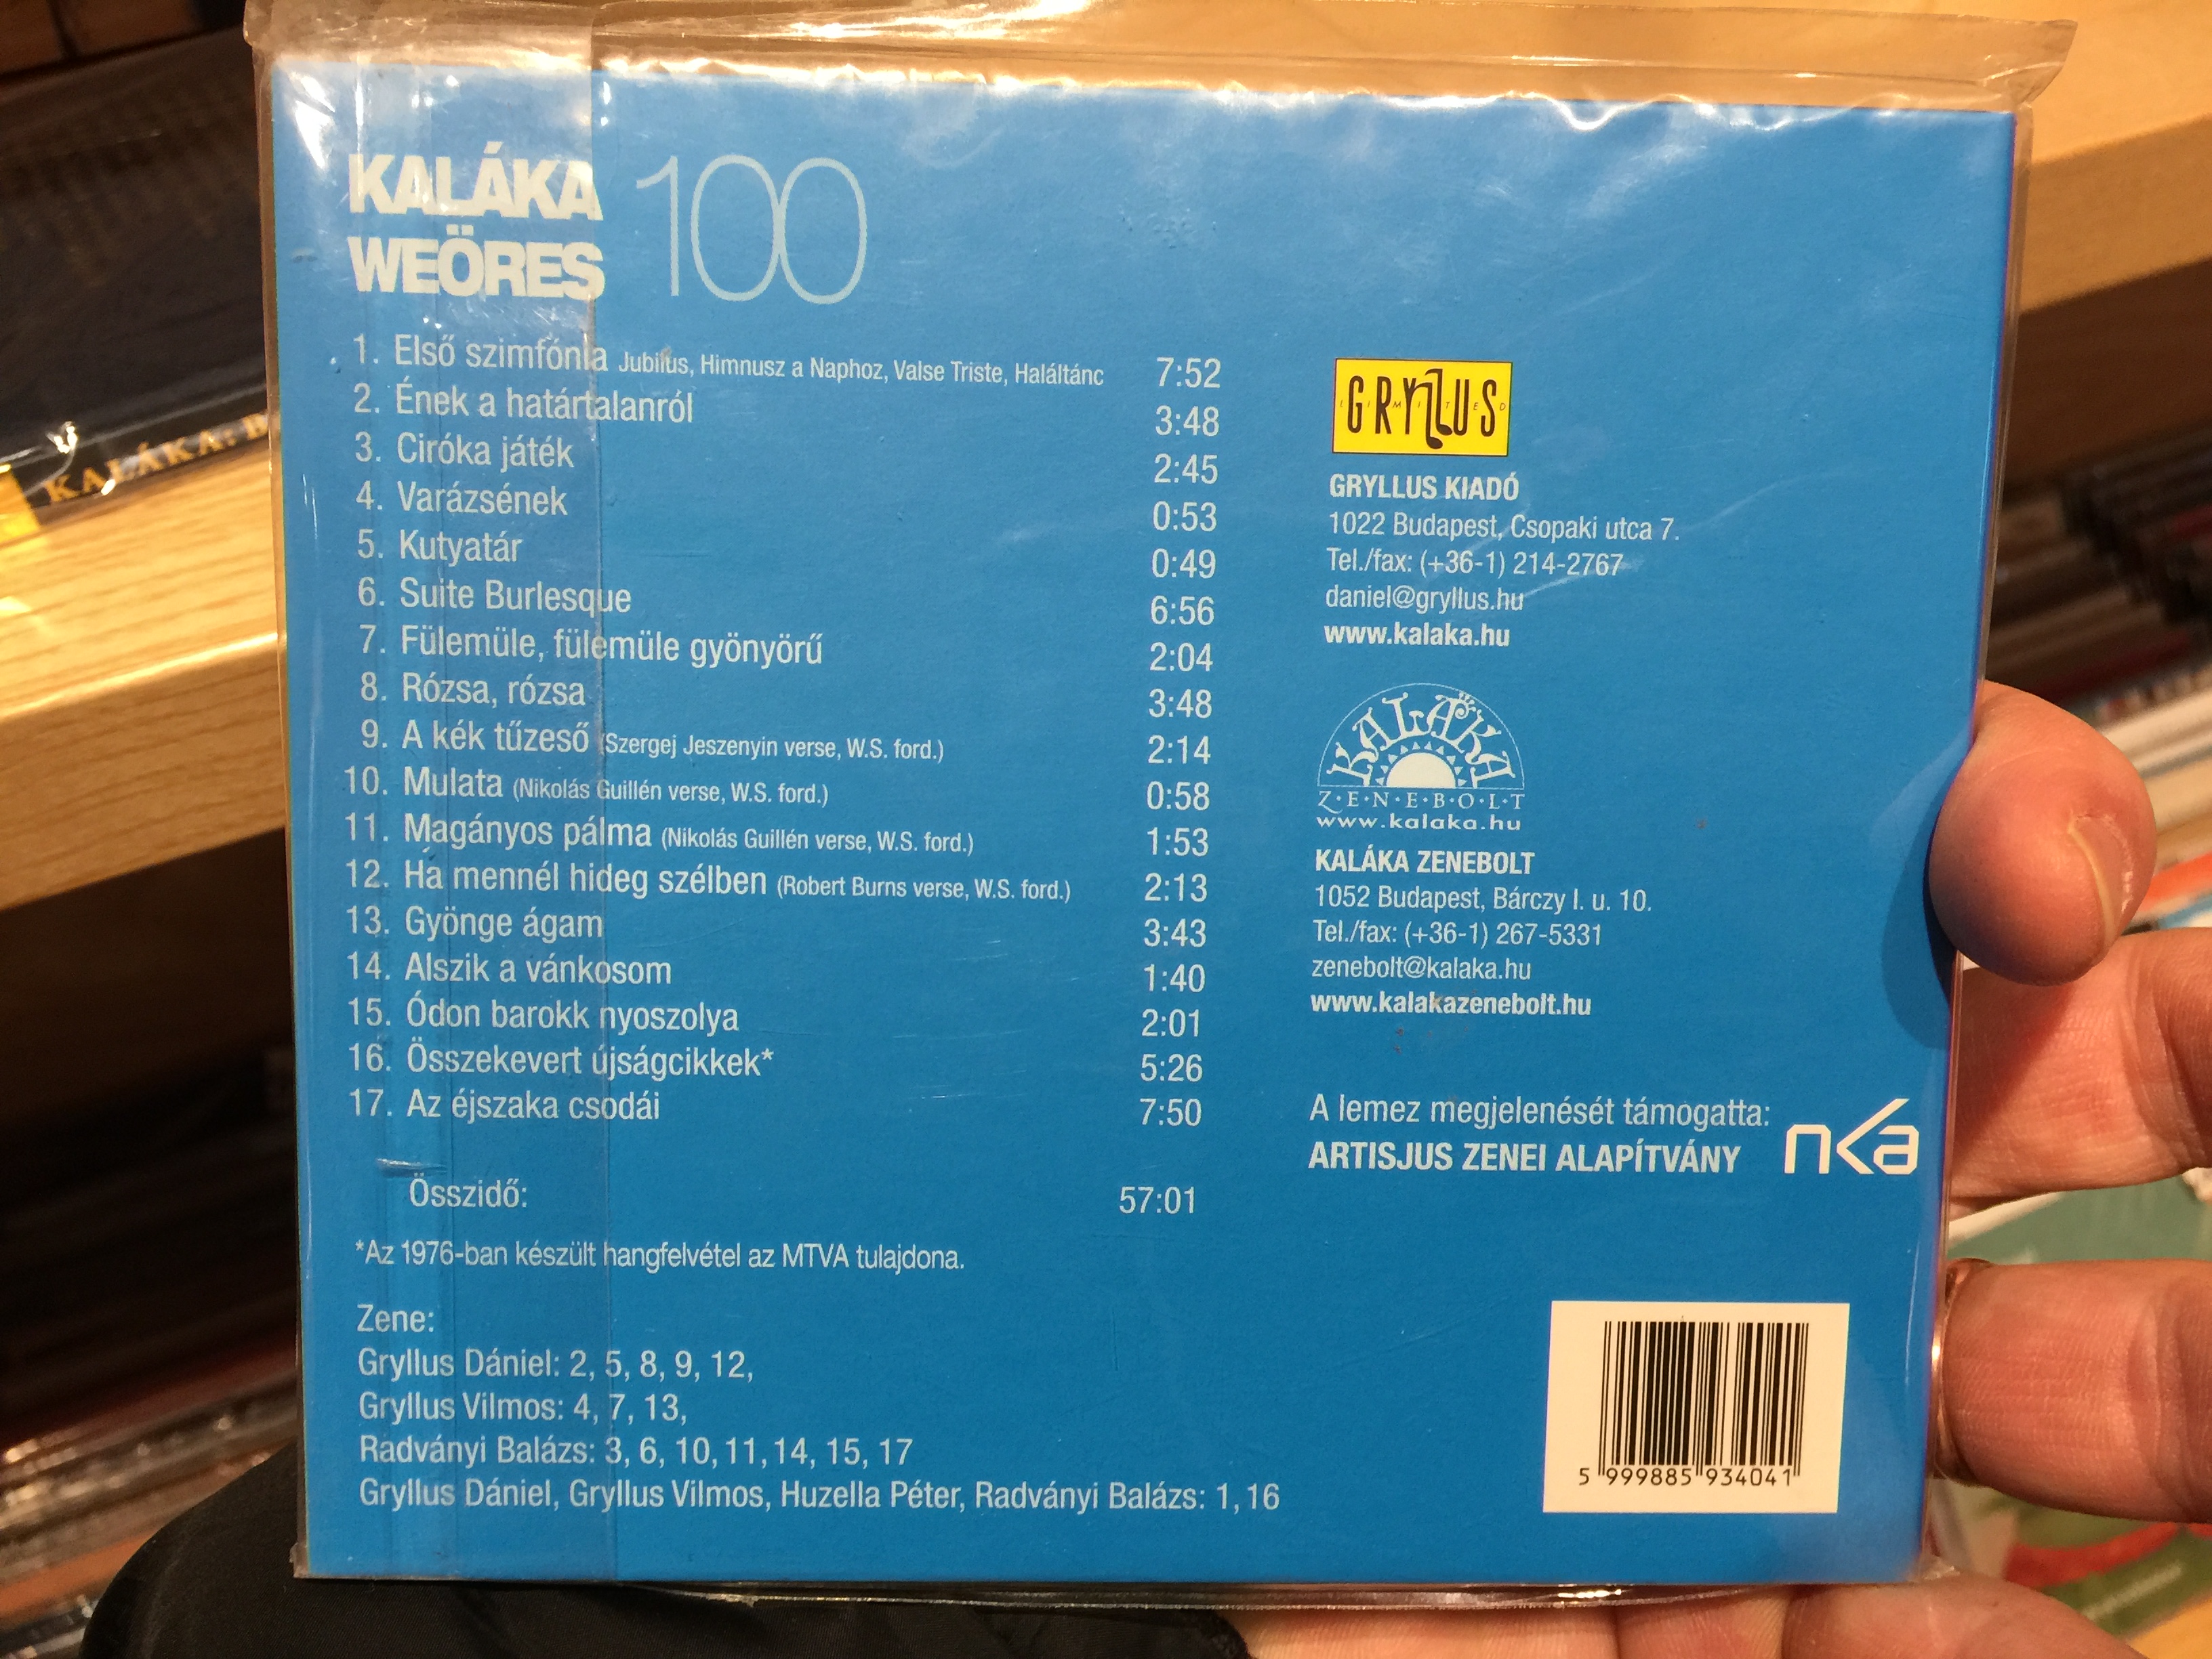 kal-ka-weores-100-gryllus-audio-cd-5999885934041-2-.jpg